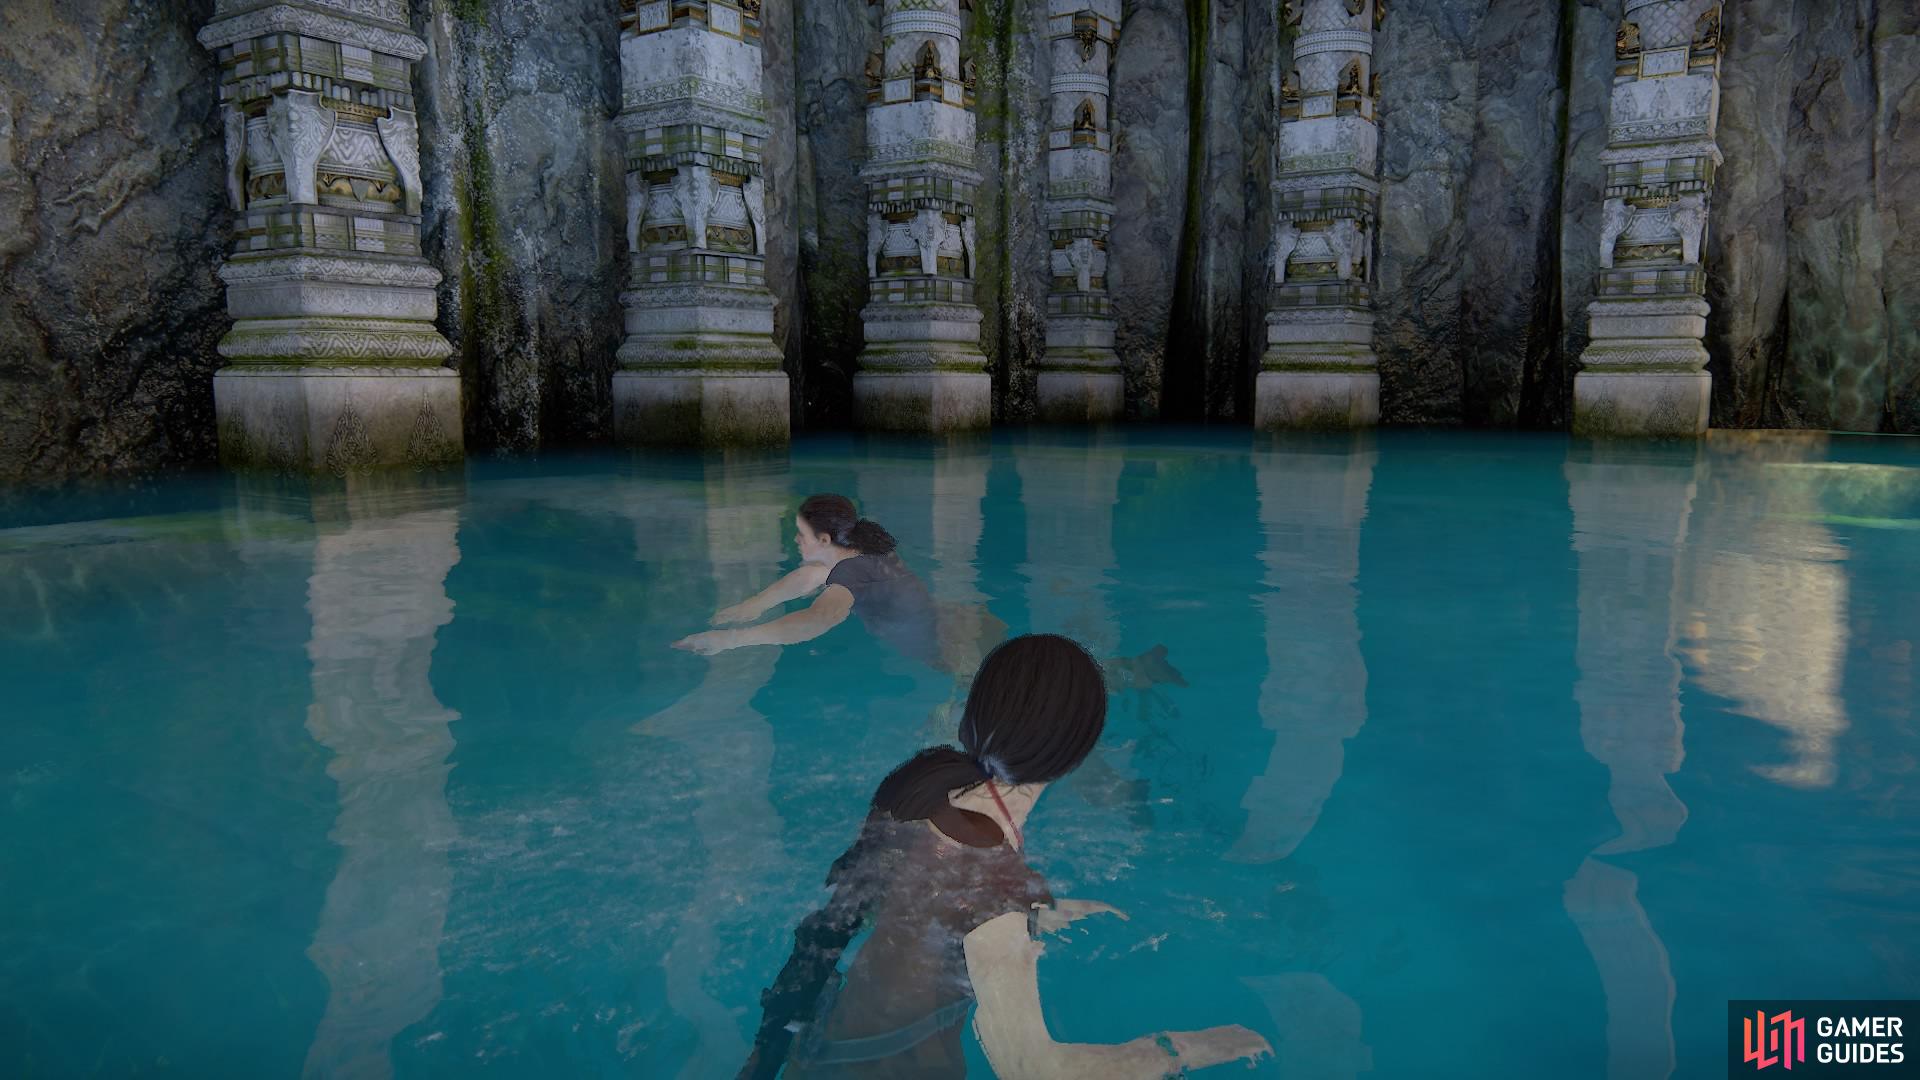 Swim along the pillars on the left side